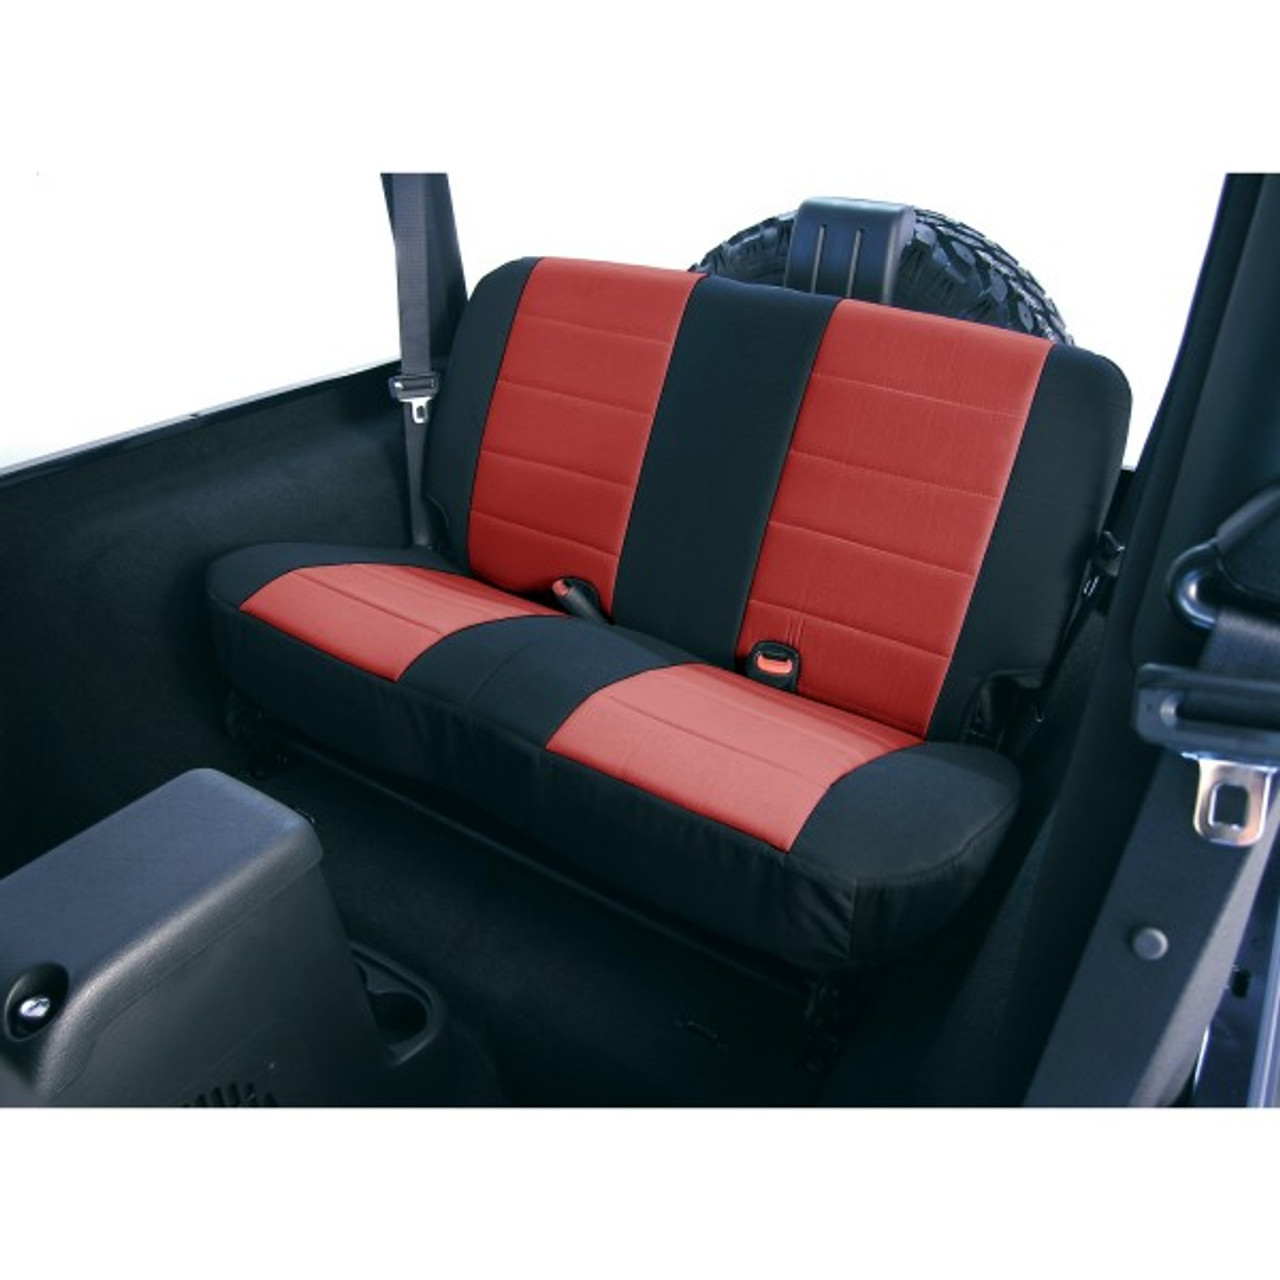 '97-'02 TJ/LJ Neoprene Rear Seat Cover (Red & Black)